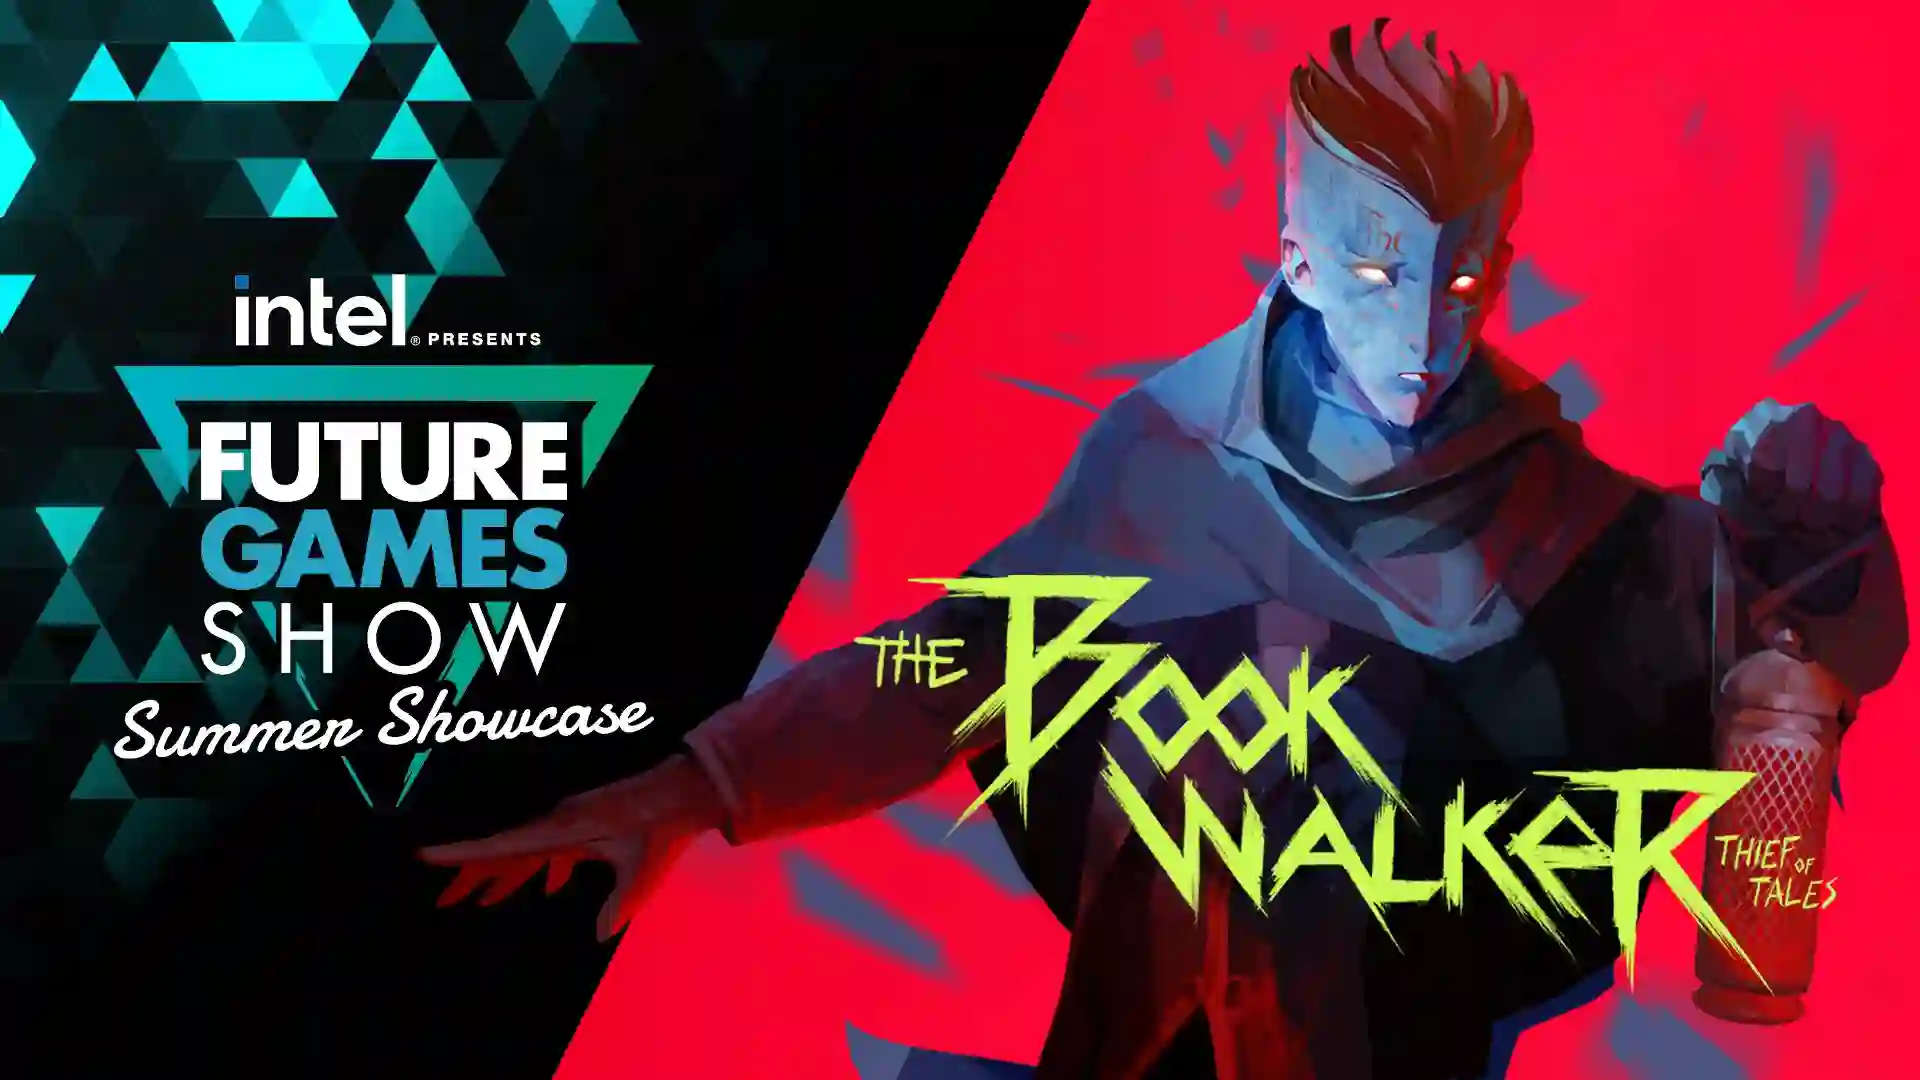 تاریخ انتشار بازی The Bookwalker: Thief of Tales در Future Games مشخص شد